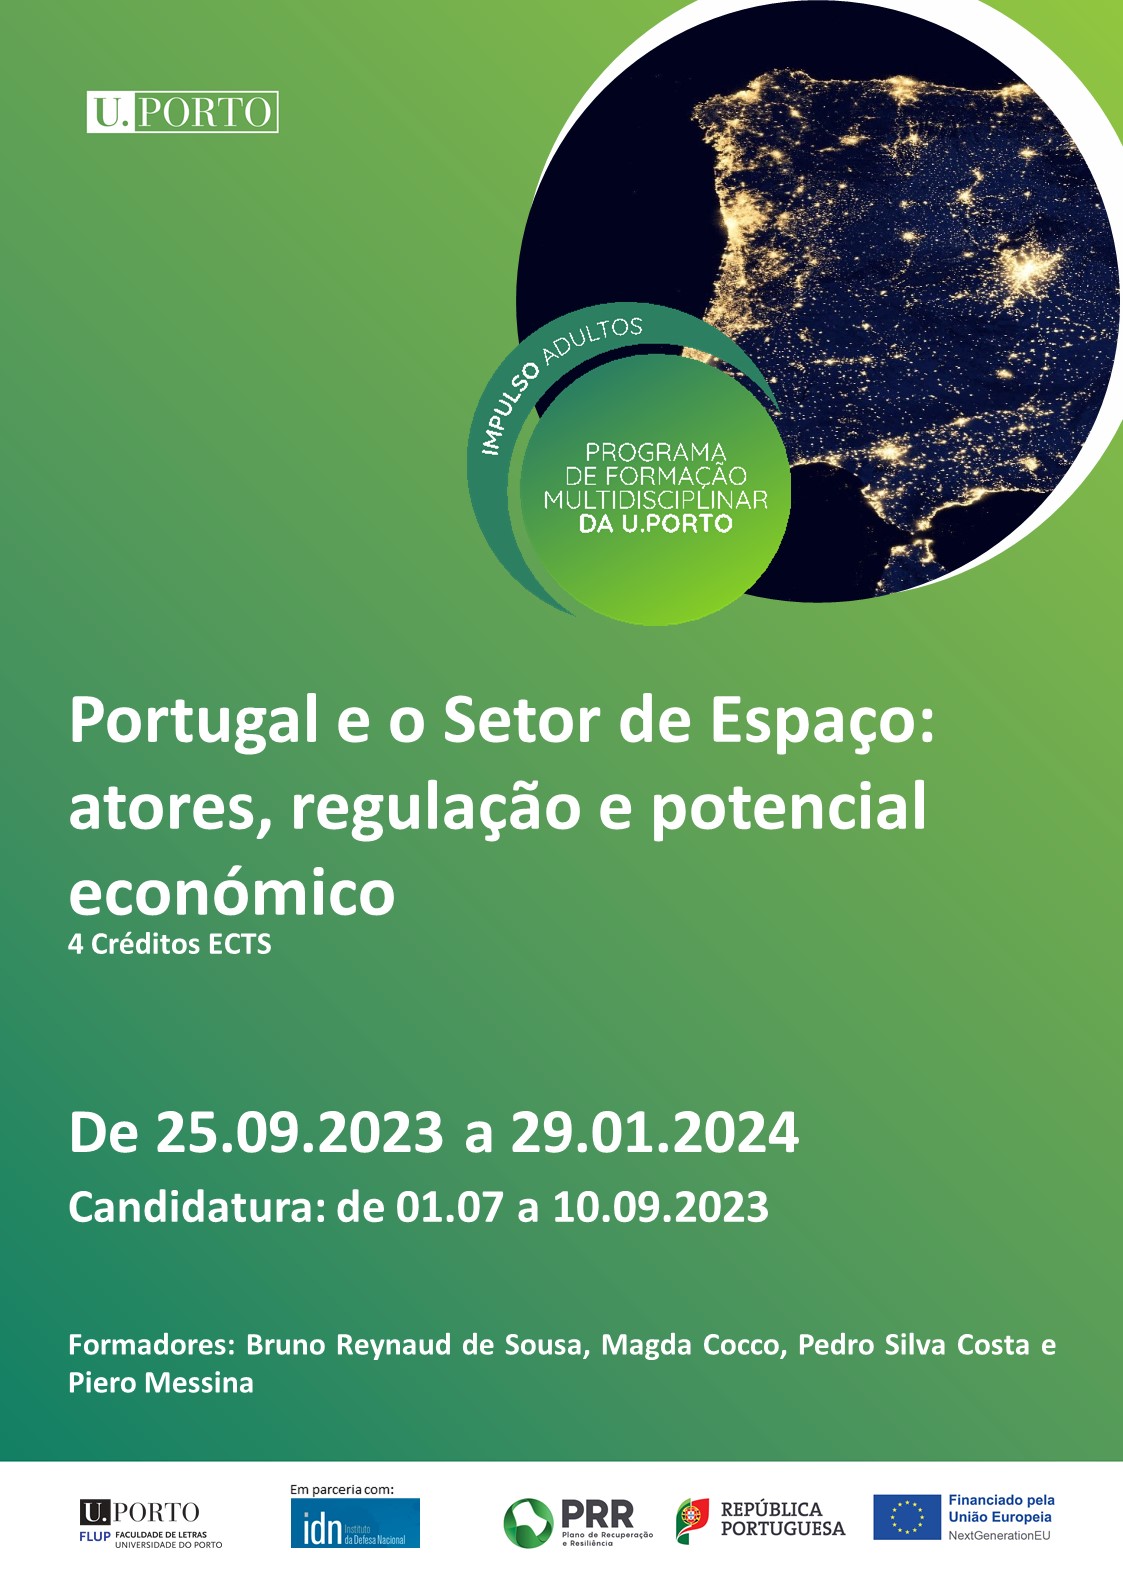 Portugal e o Setor do Espaço: atores, regulação e potencial económico